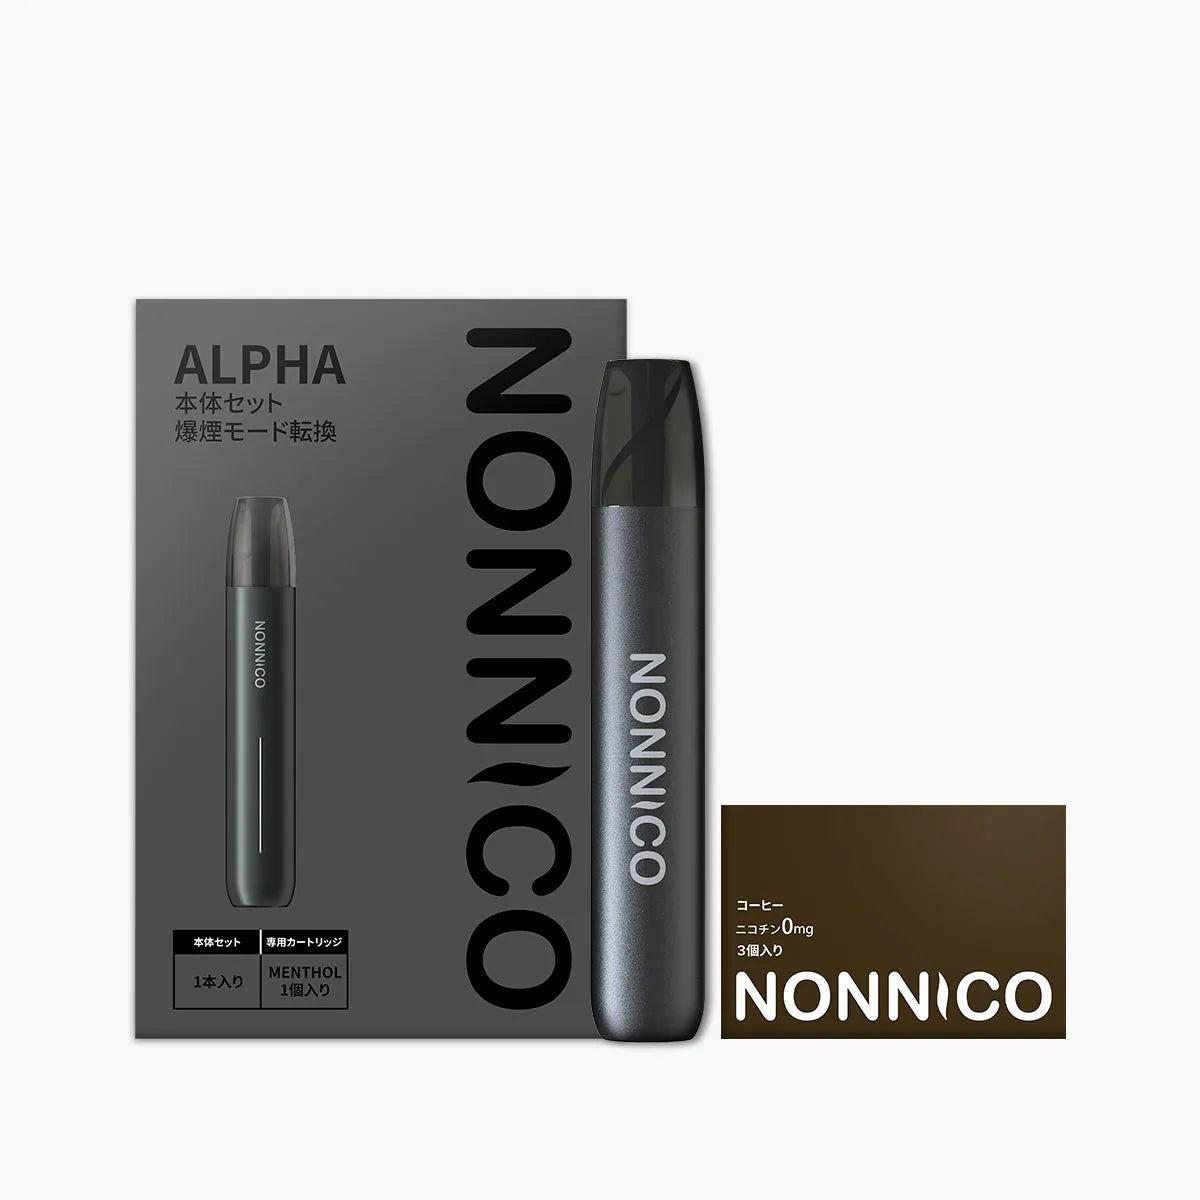 NONNICO Alpha POD型電子タバコ vape キットセット（ブラック / コーヒー）